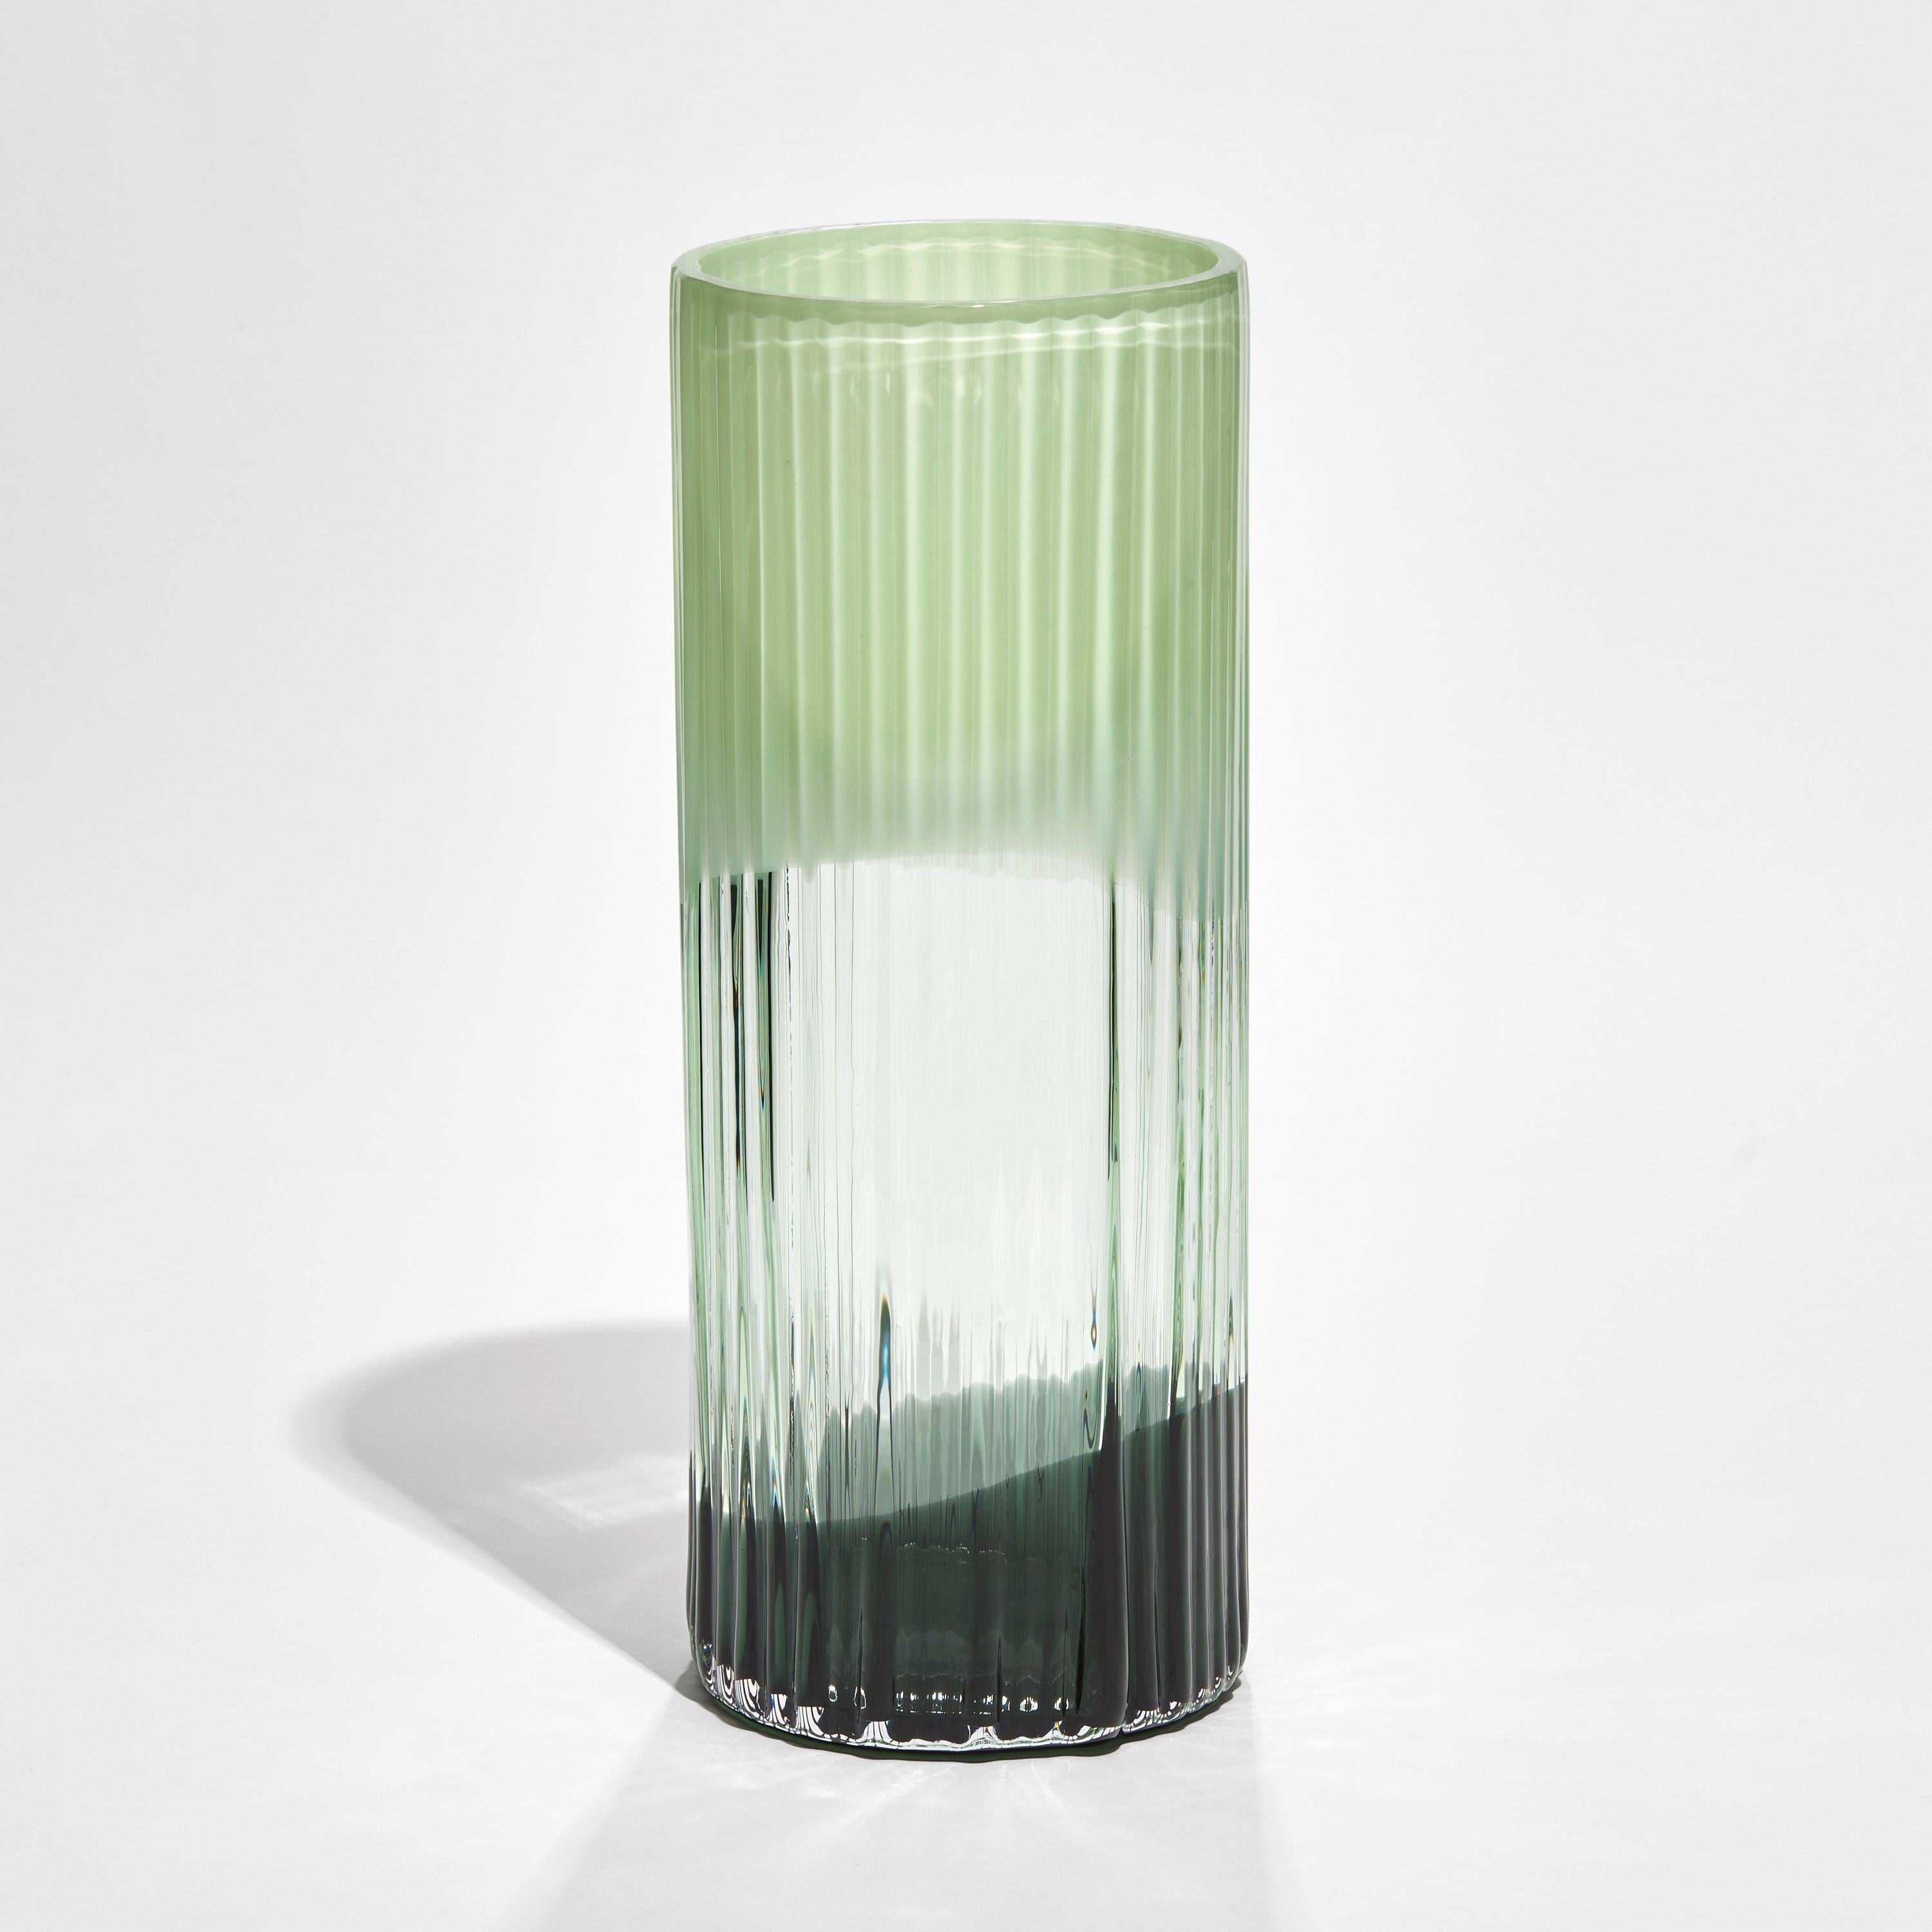 Le vase Plissé en céladon et vert foncé est une édition limitée du vase de l'artiste et designer suédoise Lena Bergström.

Créée à l'occasion de 